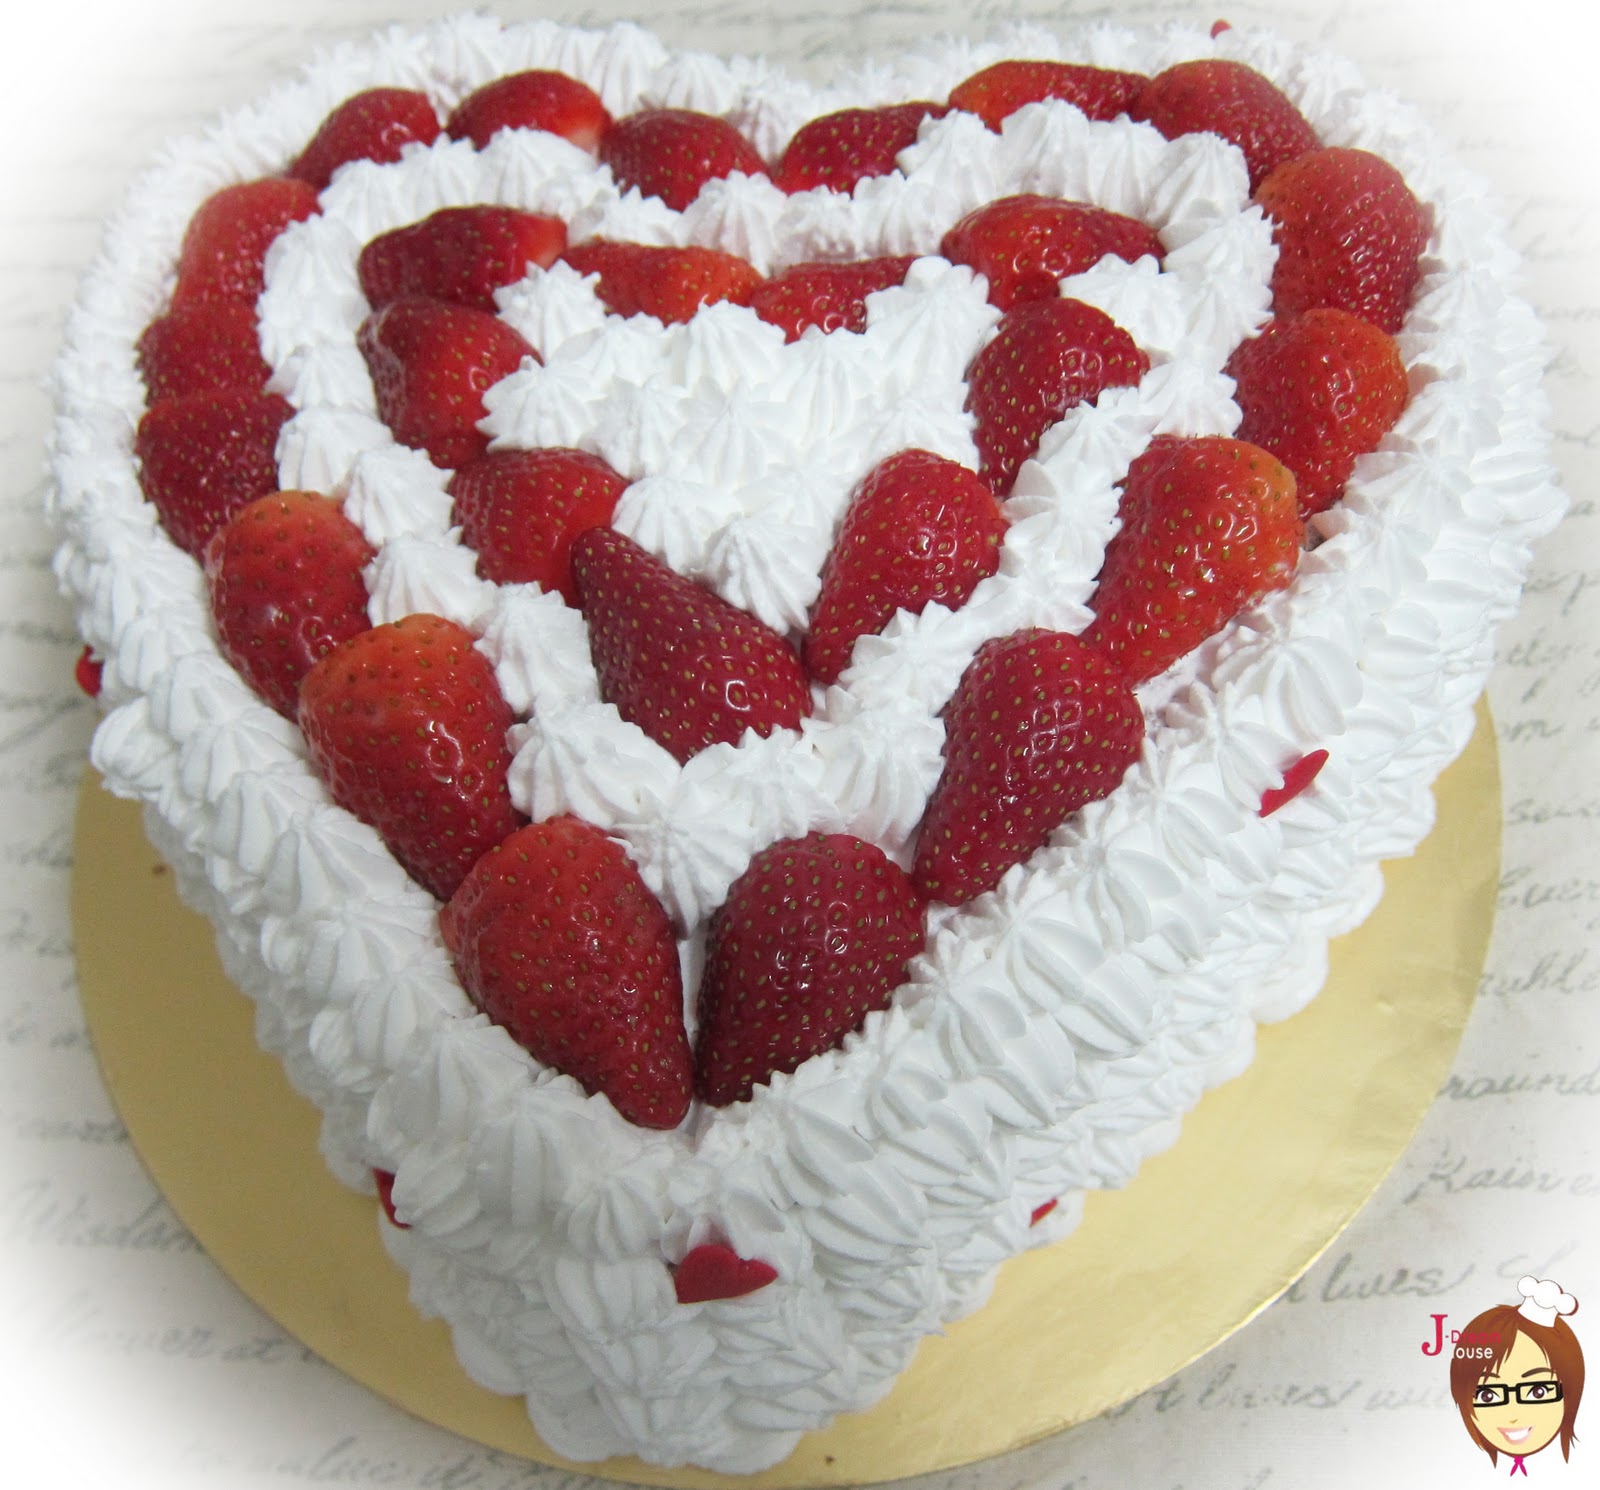 特殊情人节的心形蛋糕灵感，简单的心形蛋糕